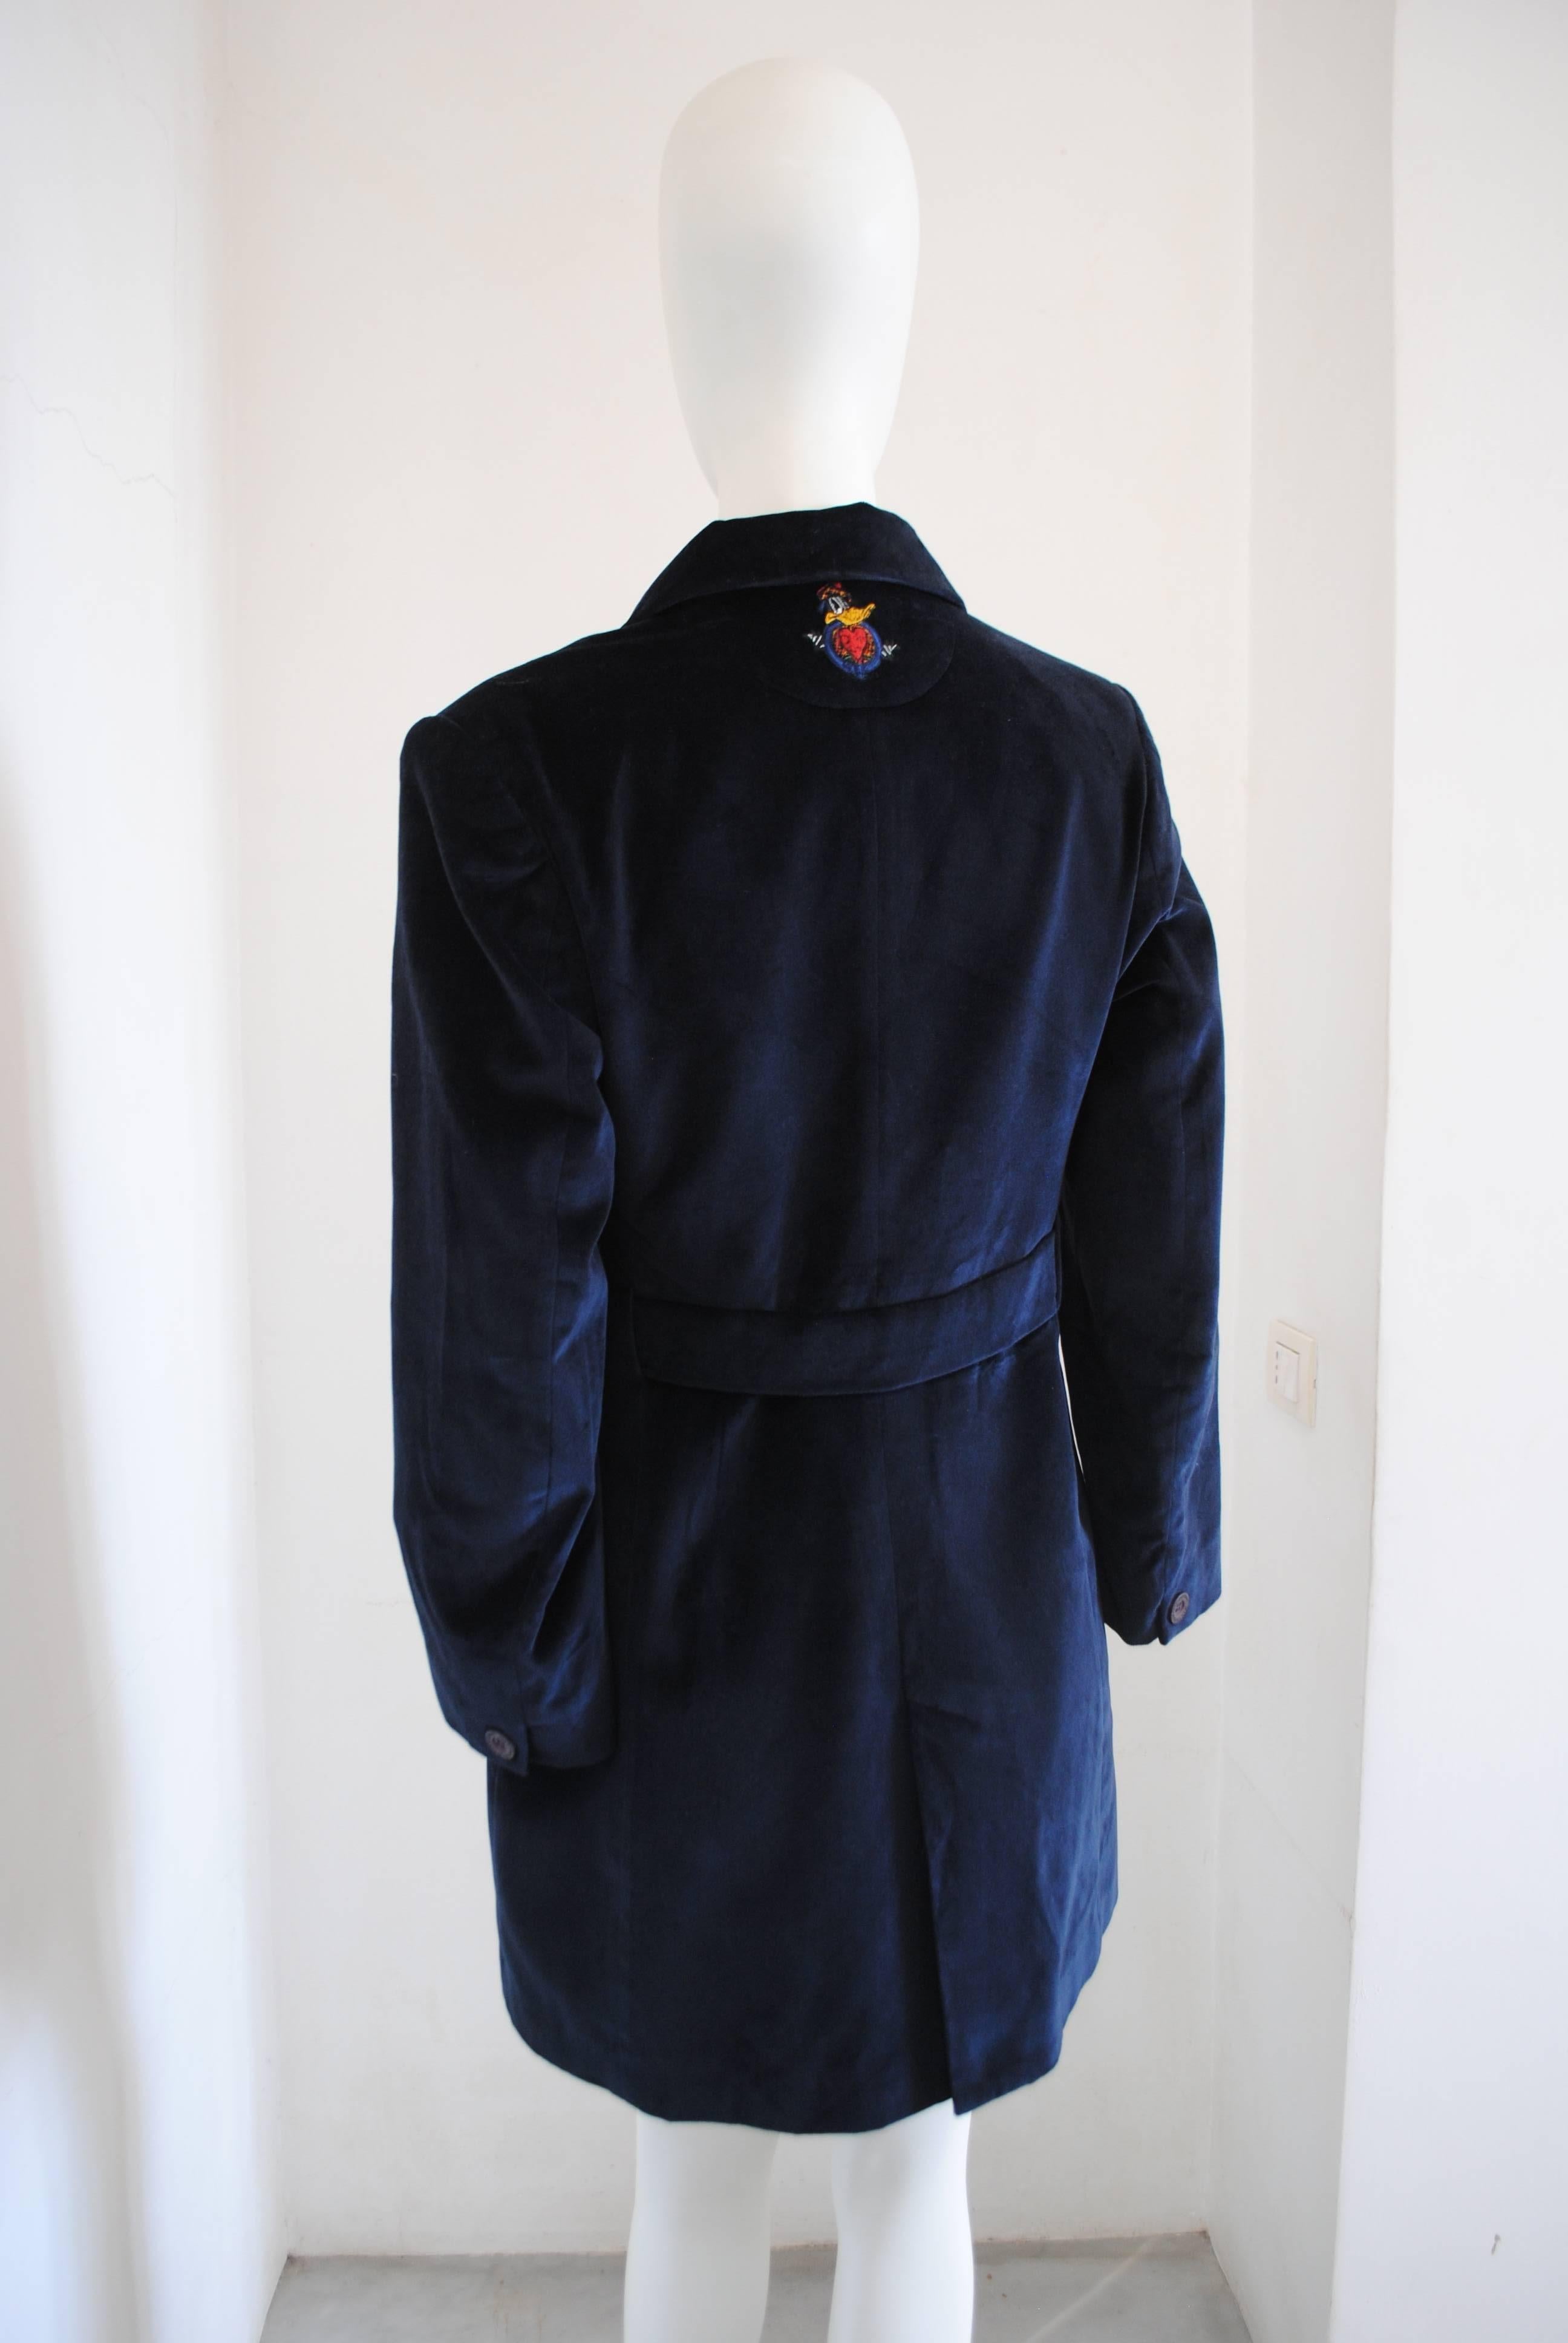 Manteau en velours bleu Jc De Castelbajac des années 1980 

blu manteau totalement made in italy en italie taille 40

Composition : Coton et polyestère